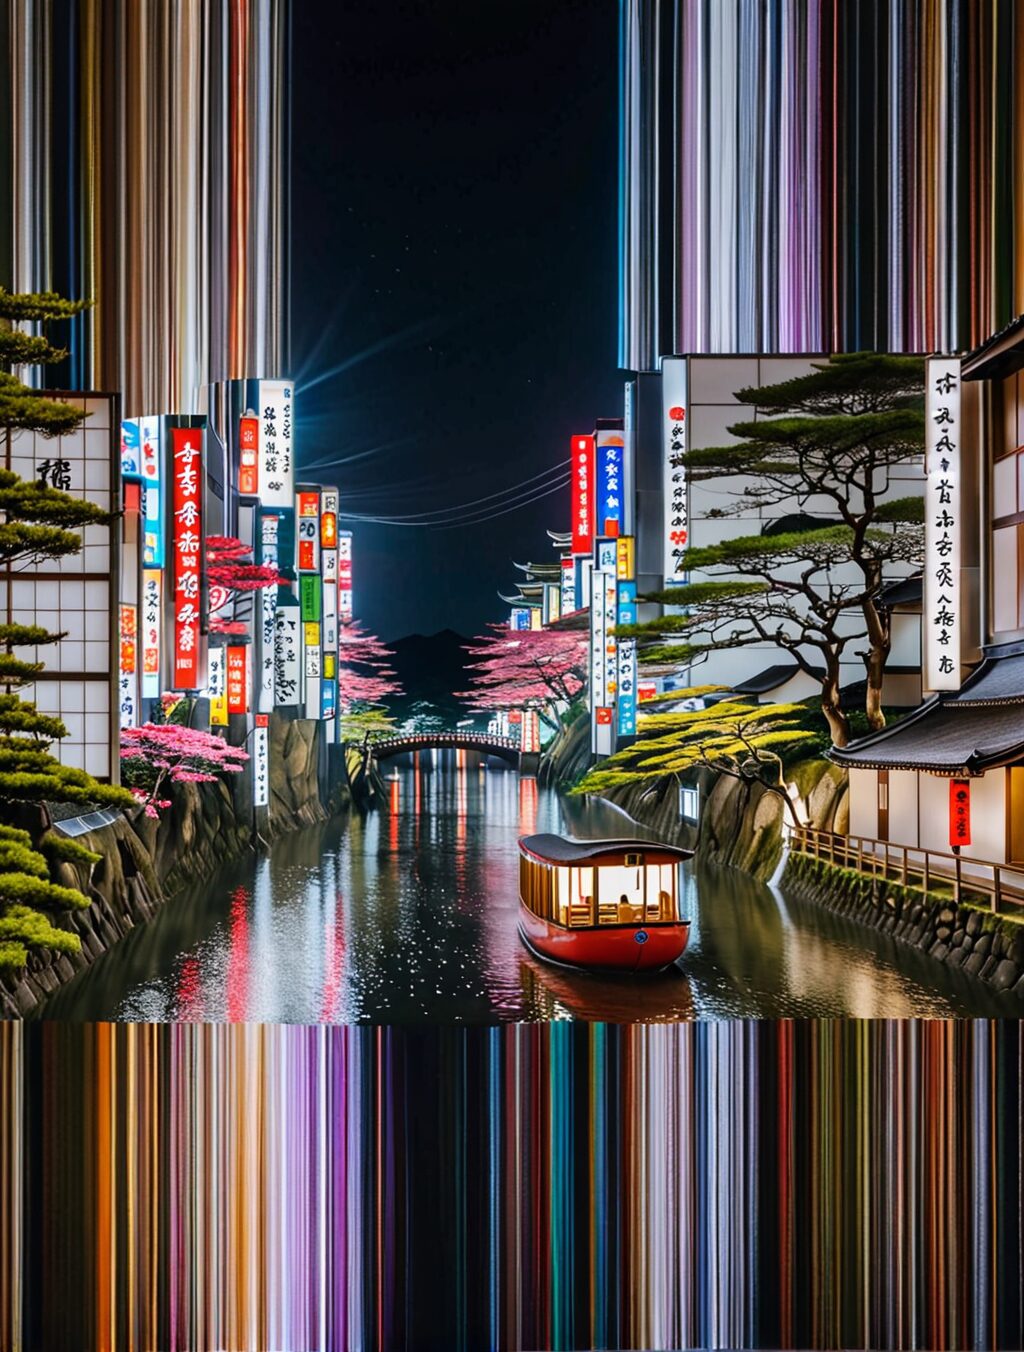 most unique places to visit in japan